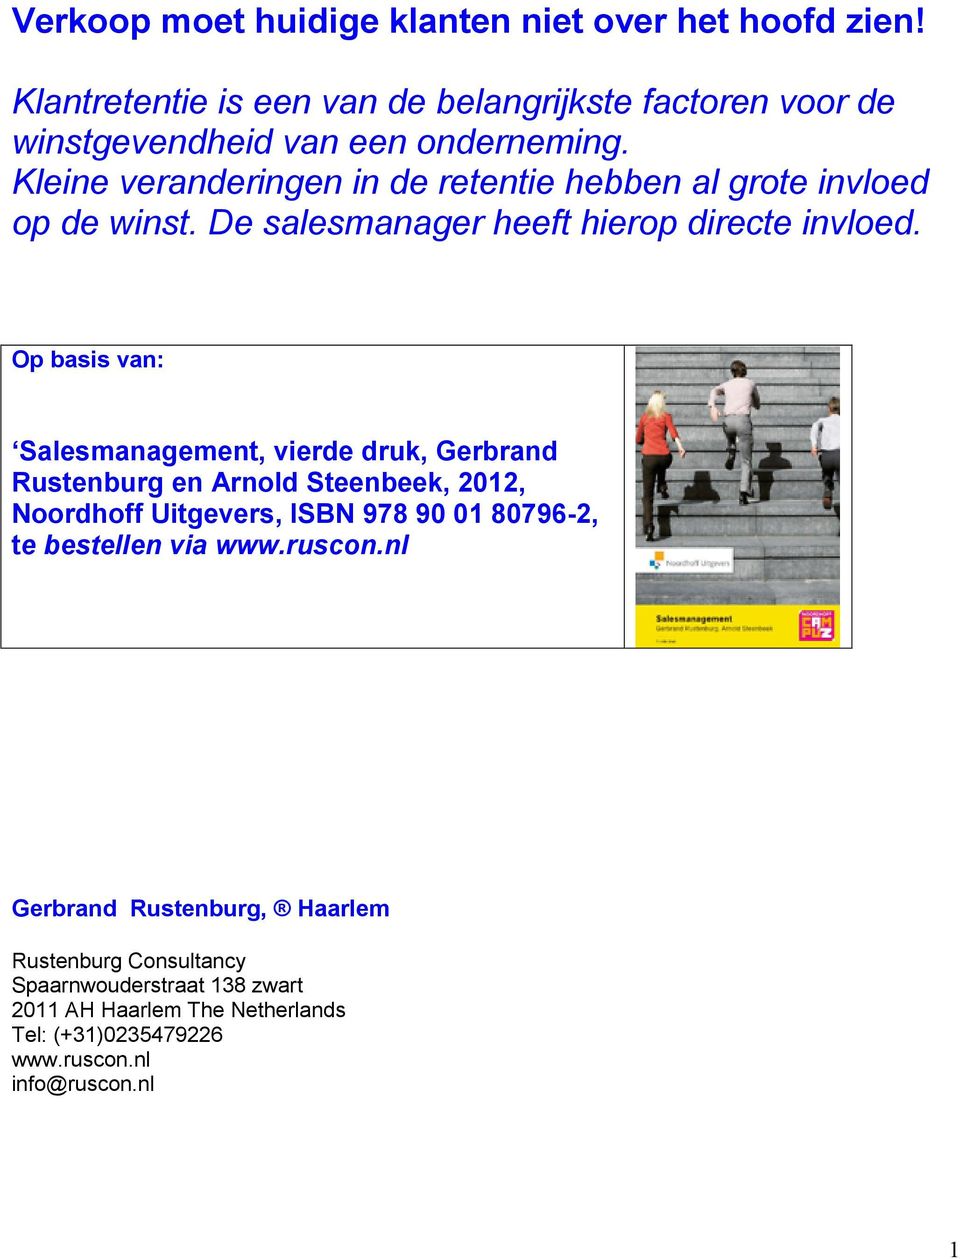 Op basis van: Salesmanagement, vierde druk, Gerbrand Rustenburg en Arnold Steenbeek, 2012, Noordhoff Uitgevers, ISBN 978 90 01 80796-2, te